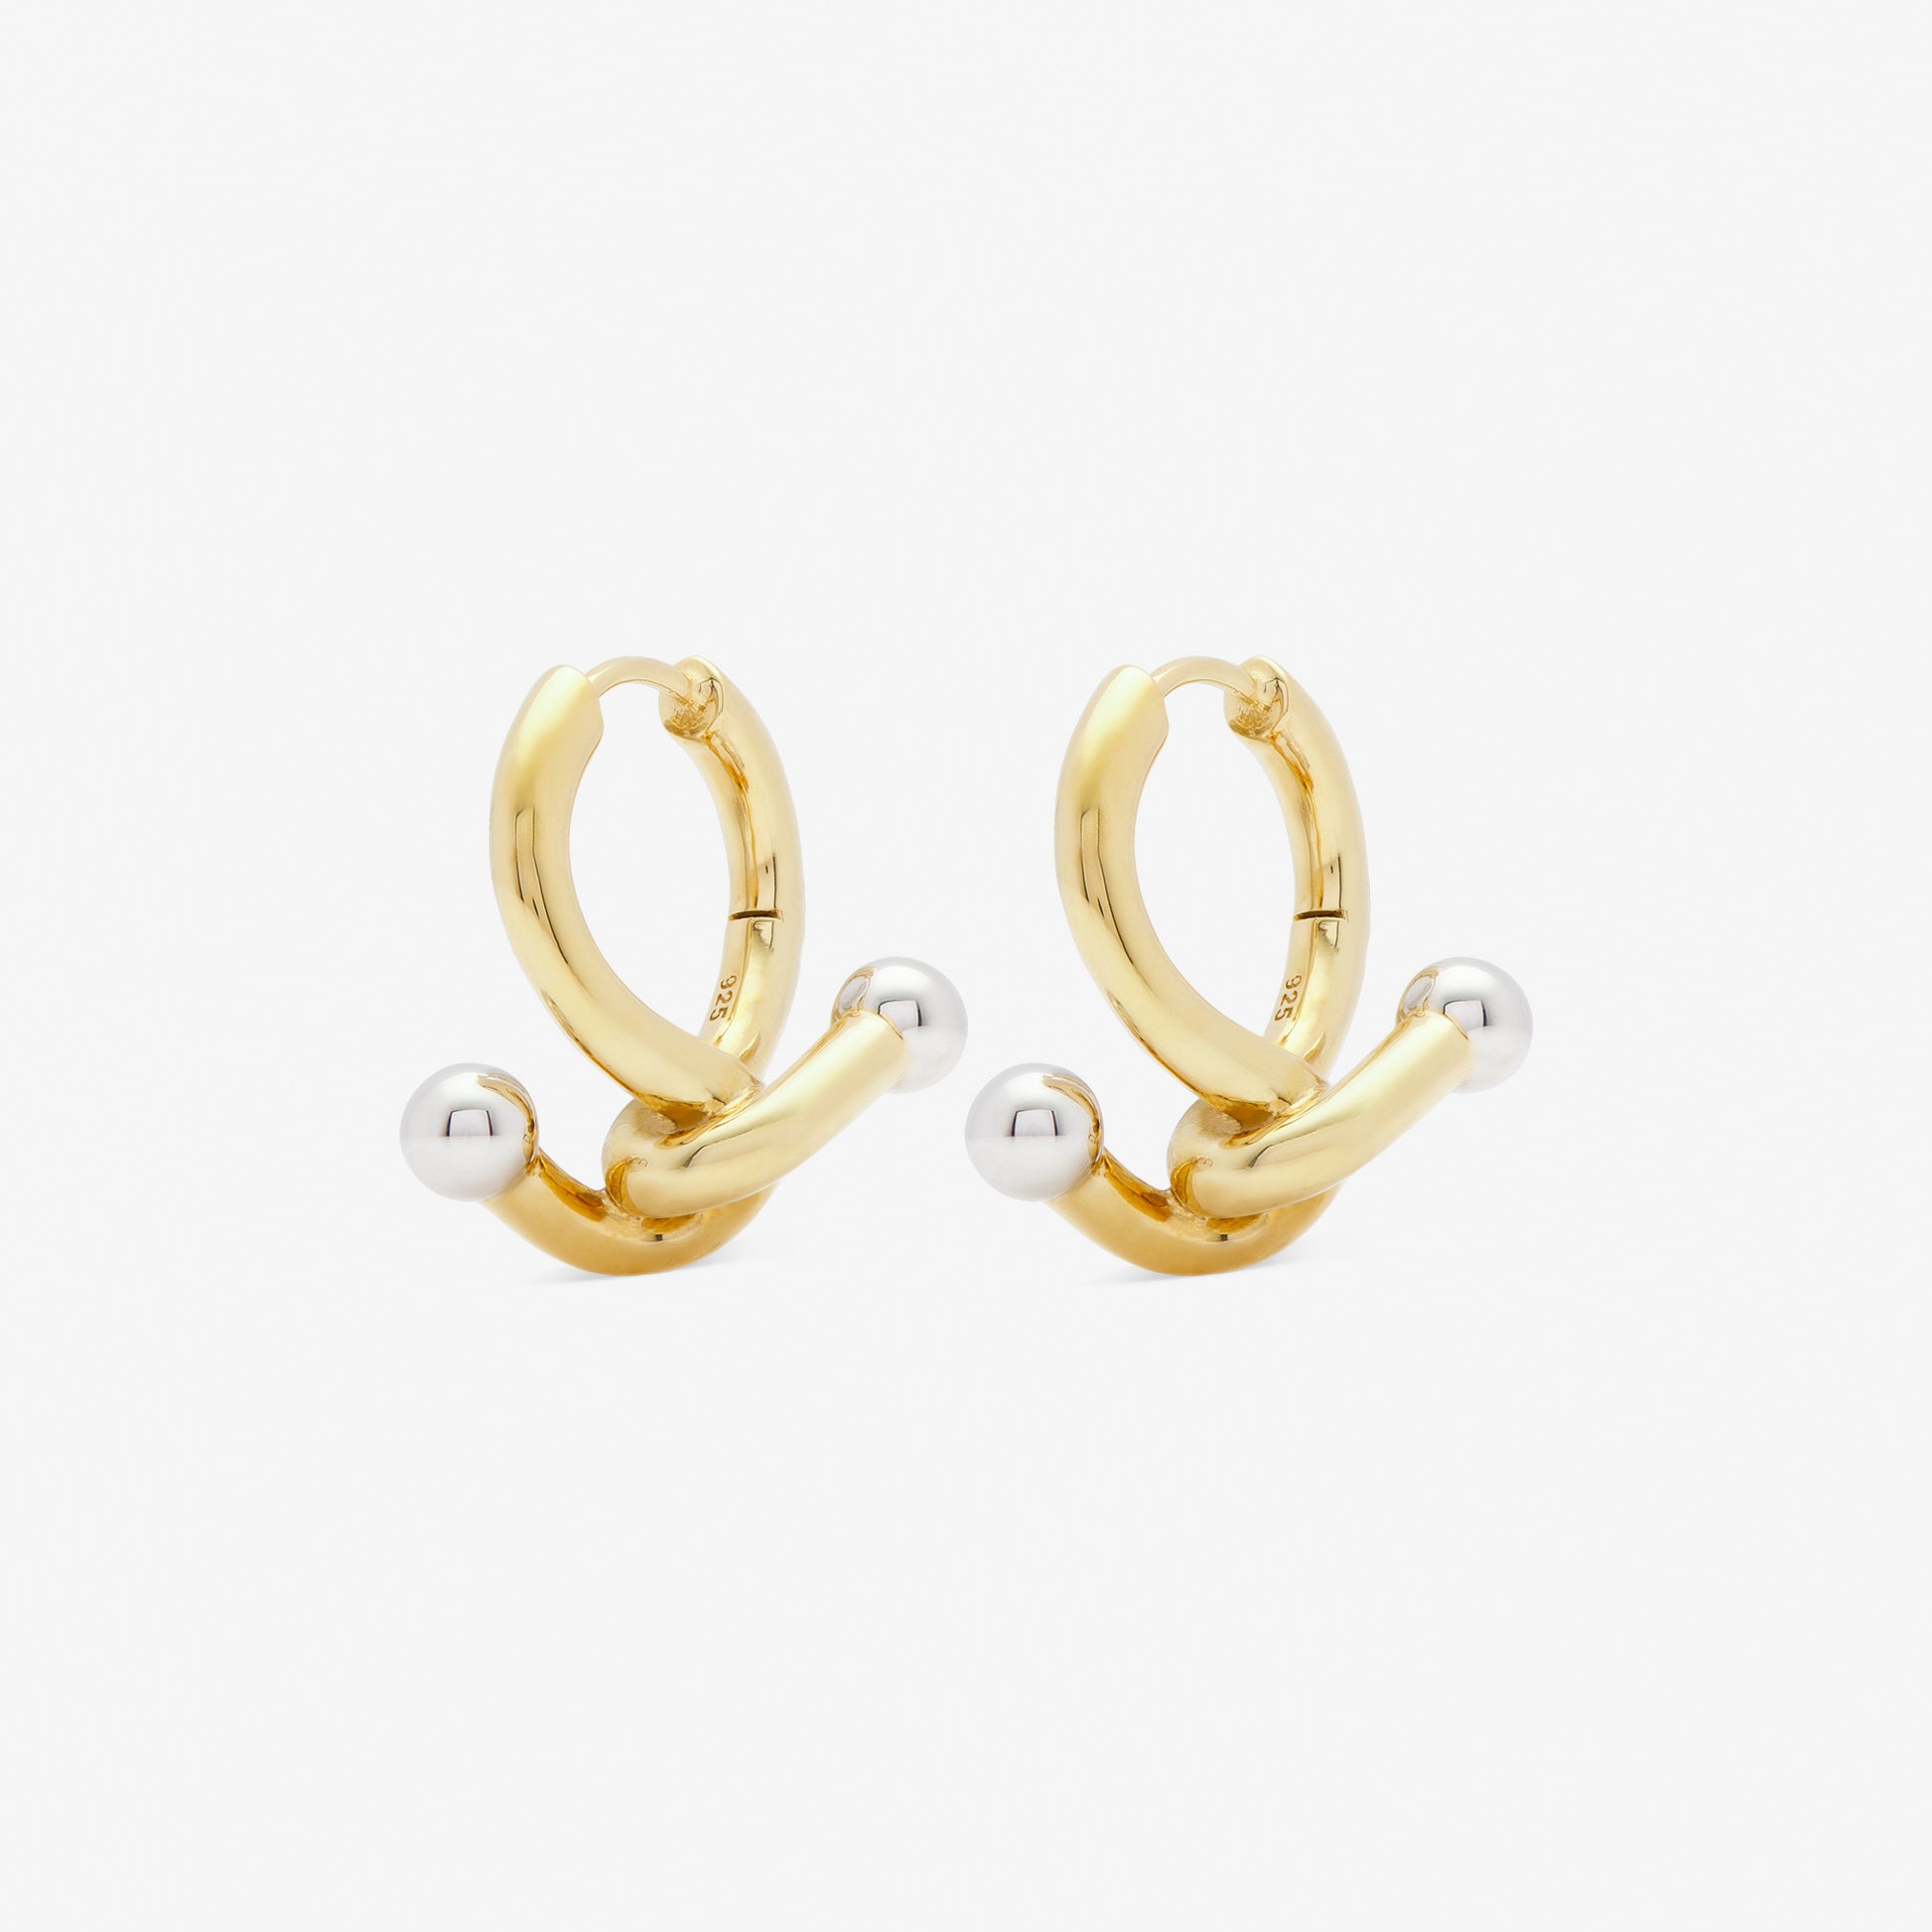 falcate earrings gold from side